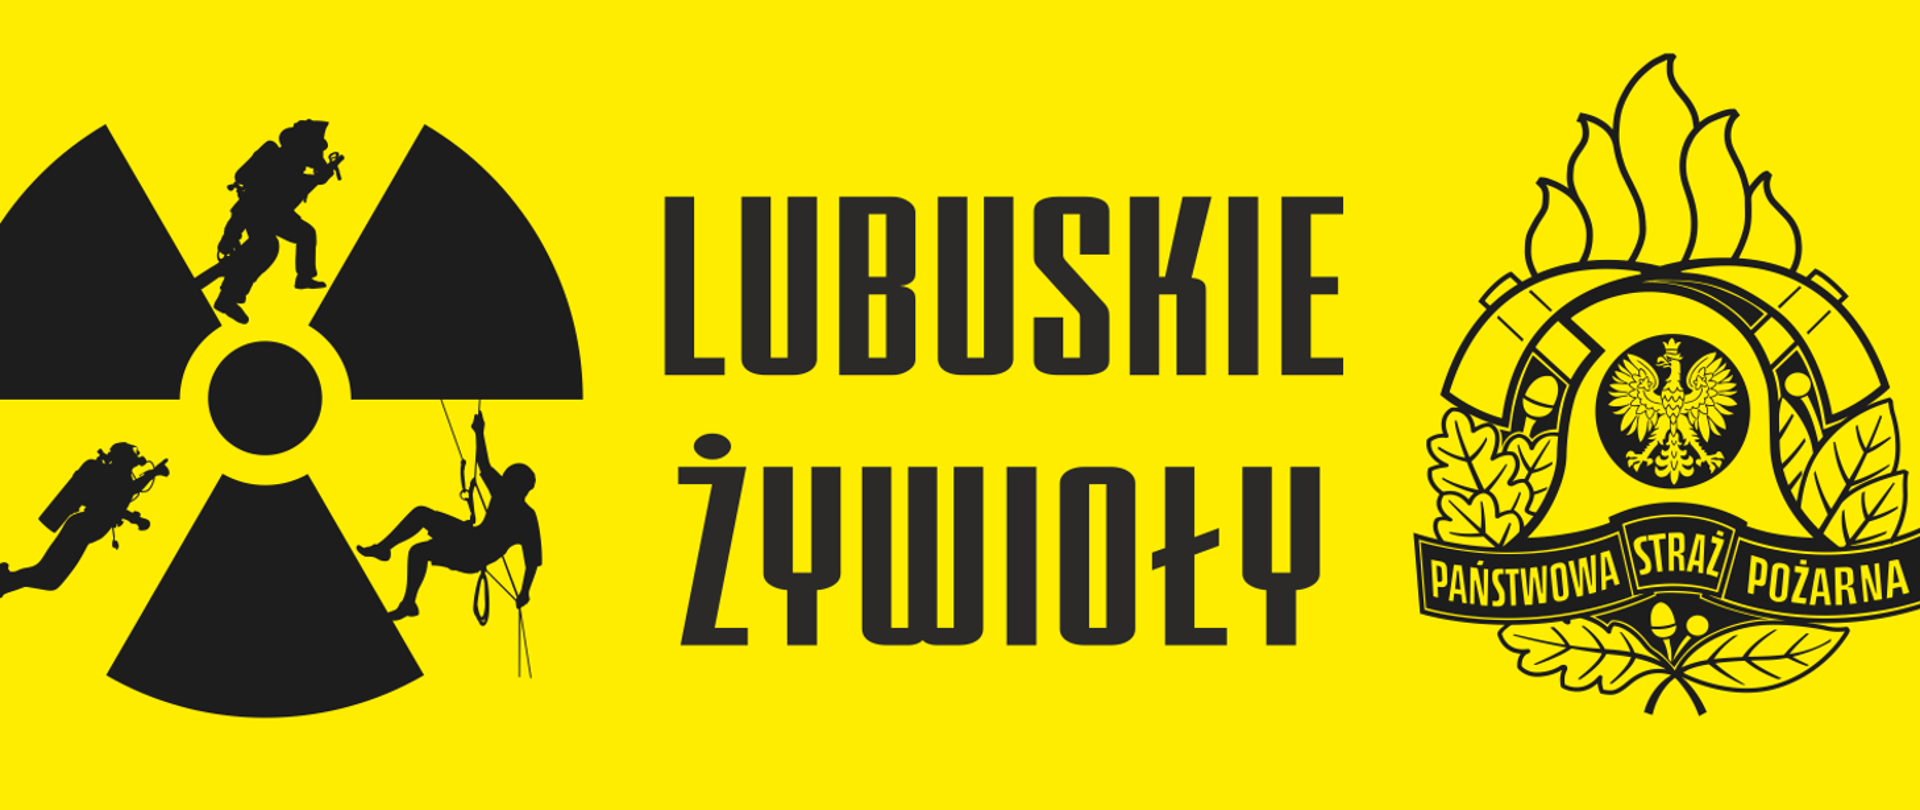 Baner z napisem Lubuskie Żywioły z logo ćwiczeń oraz PSP 